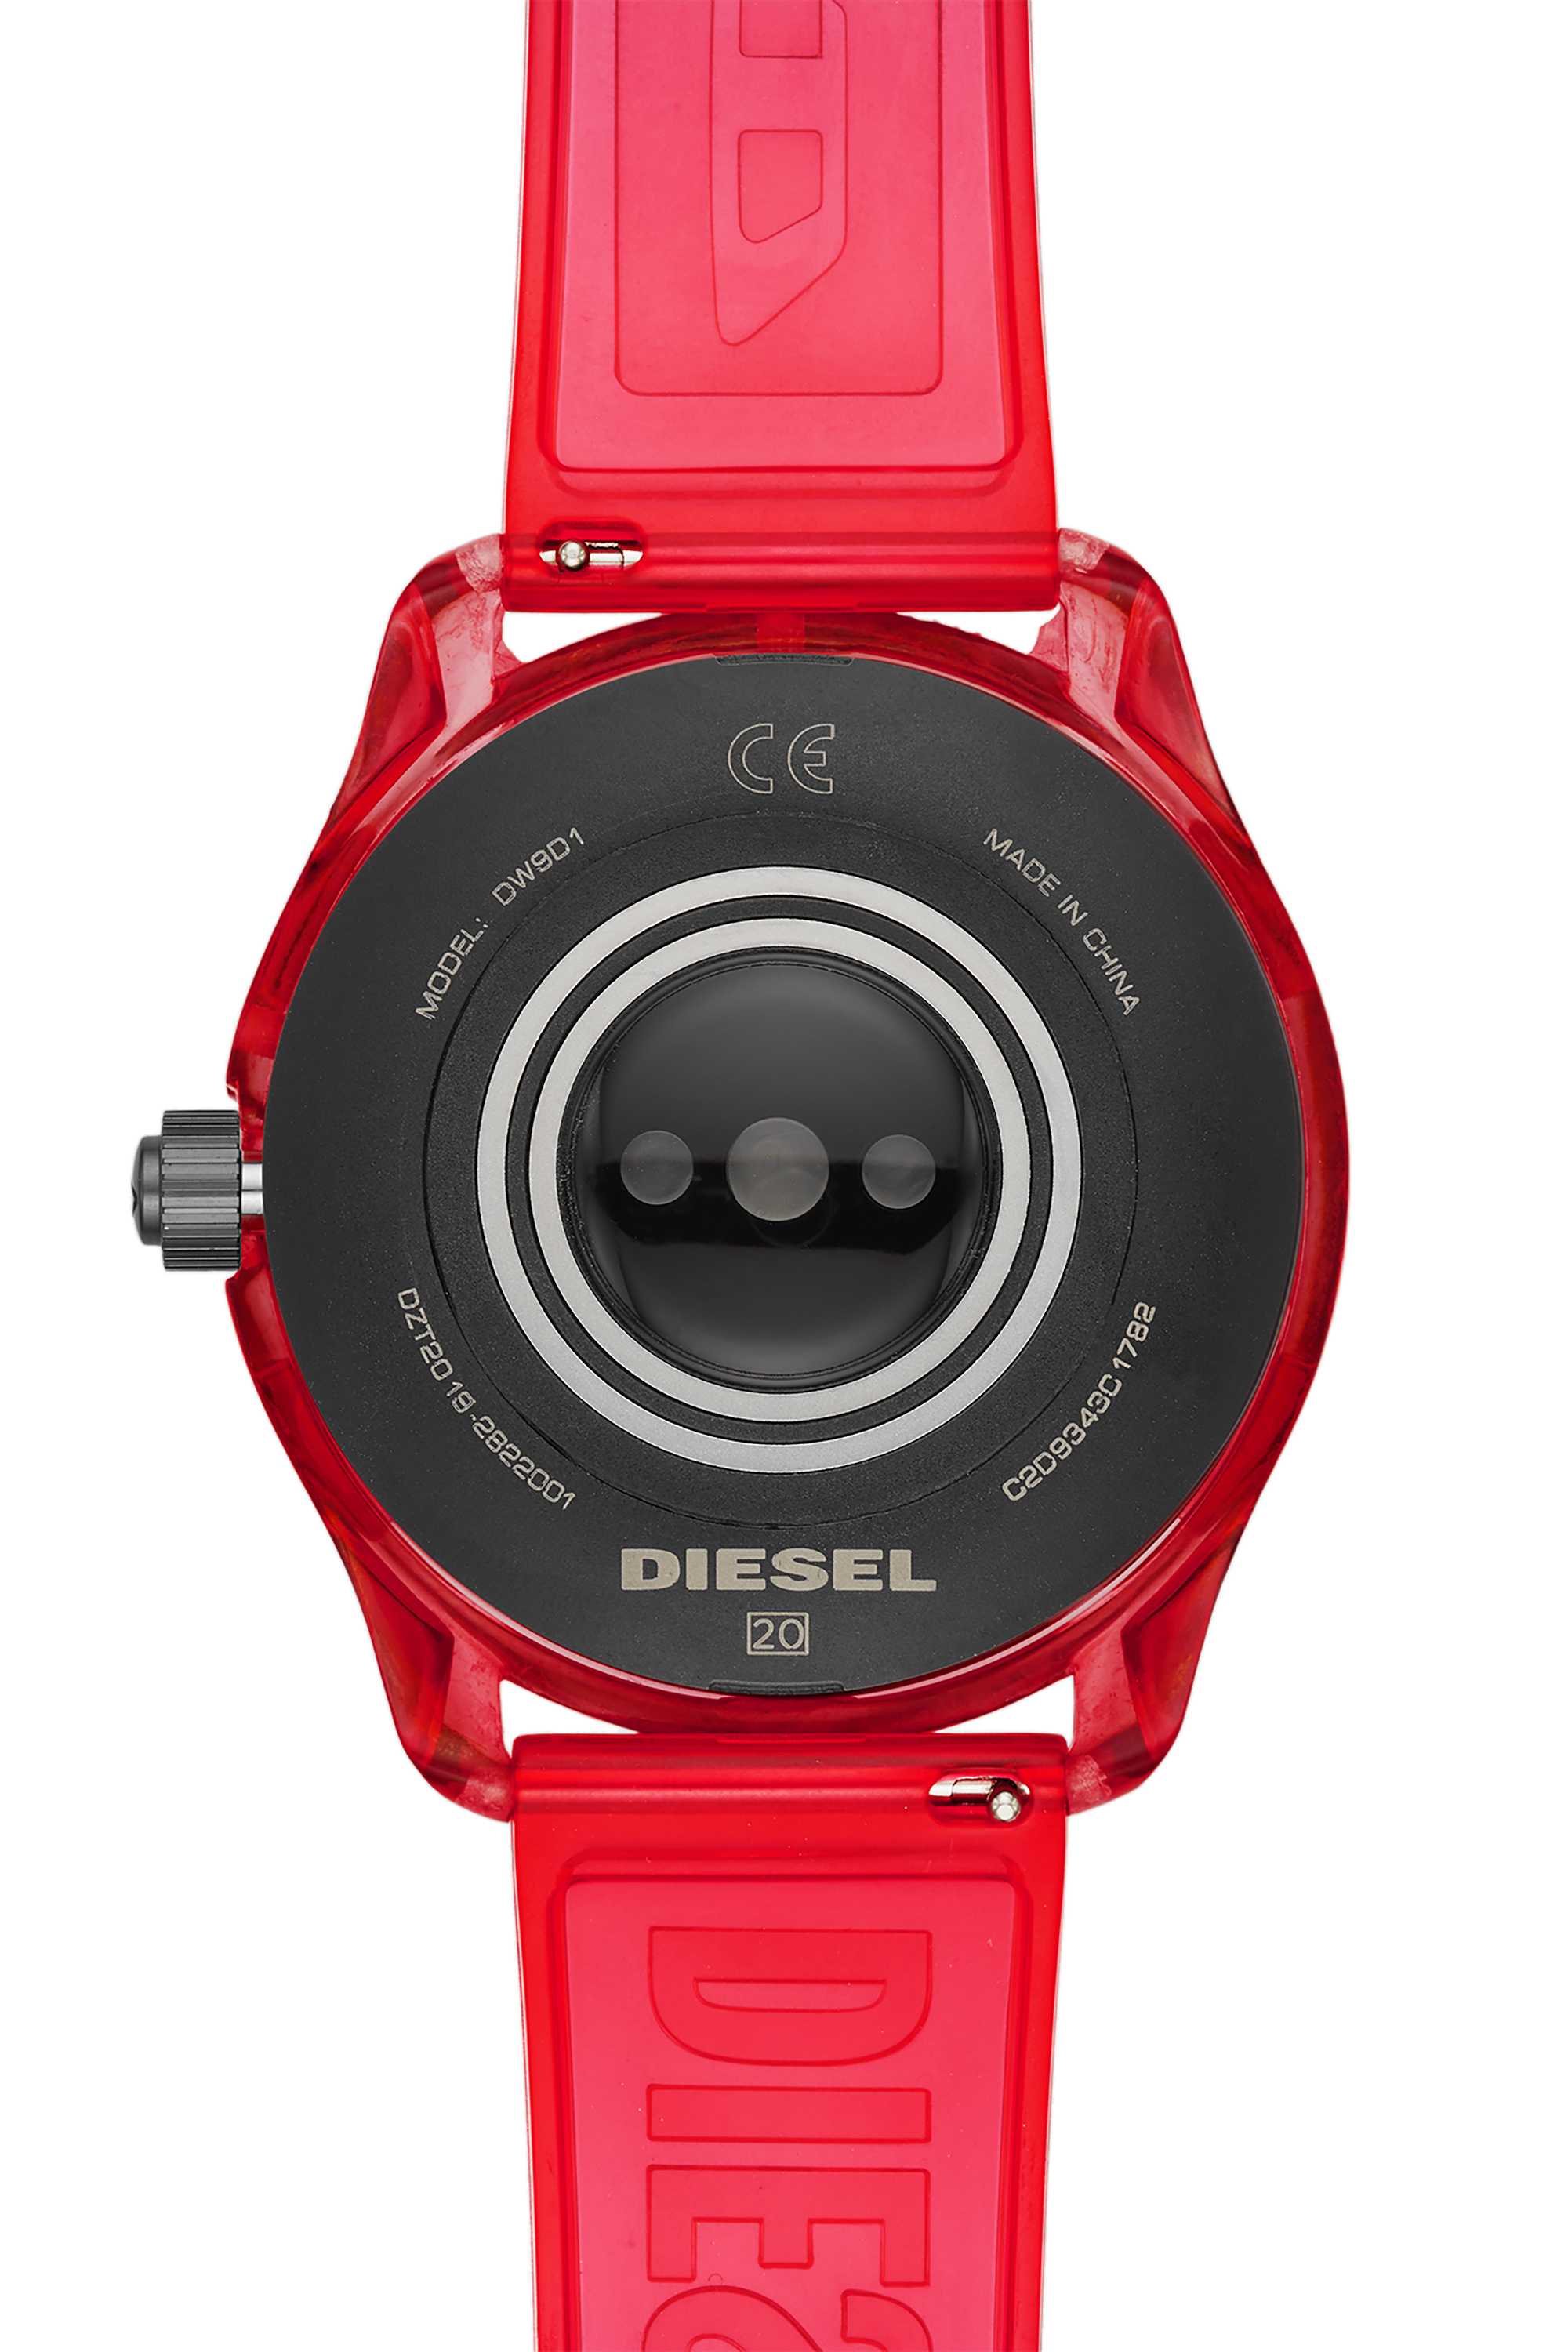 Diesel - DT2019, Red - Image 4